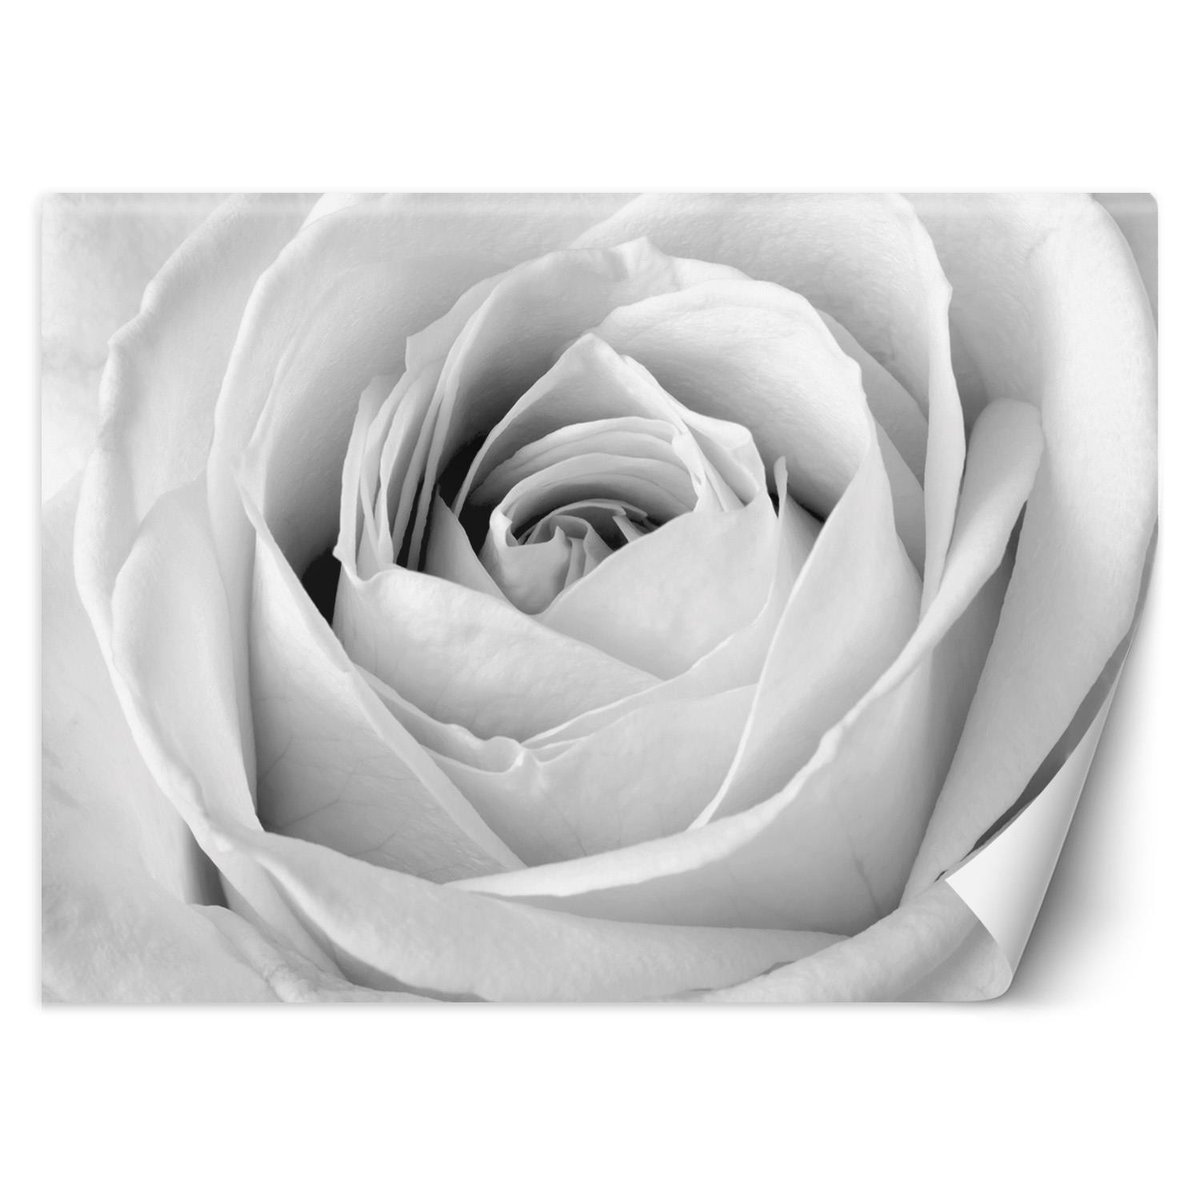 Fototapeta, Biała róża, zbliżenie na pąk (Rozmiar 350x245)